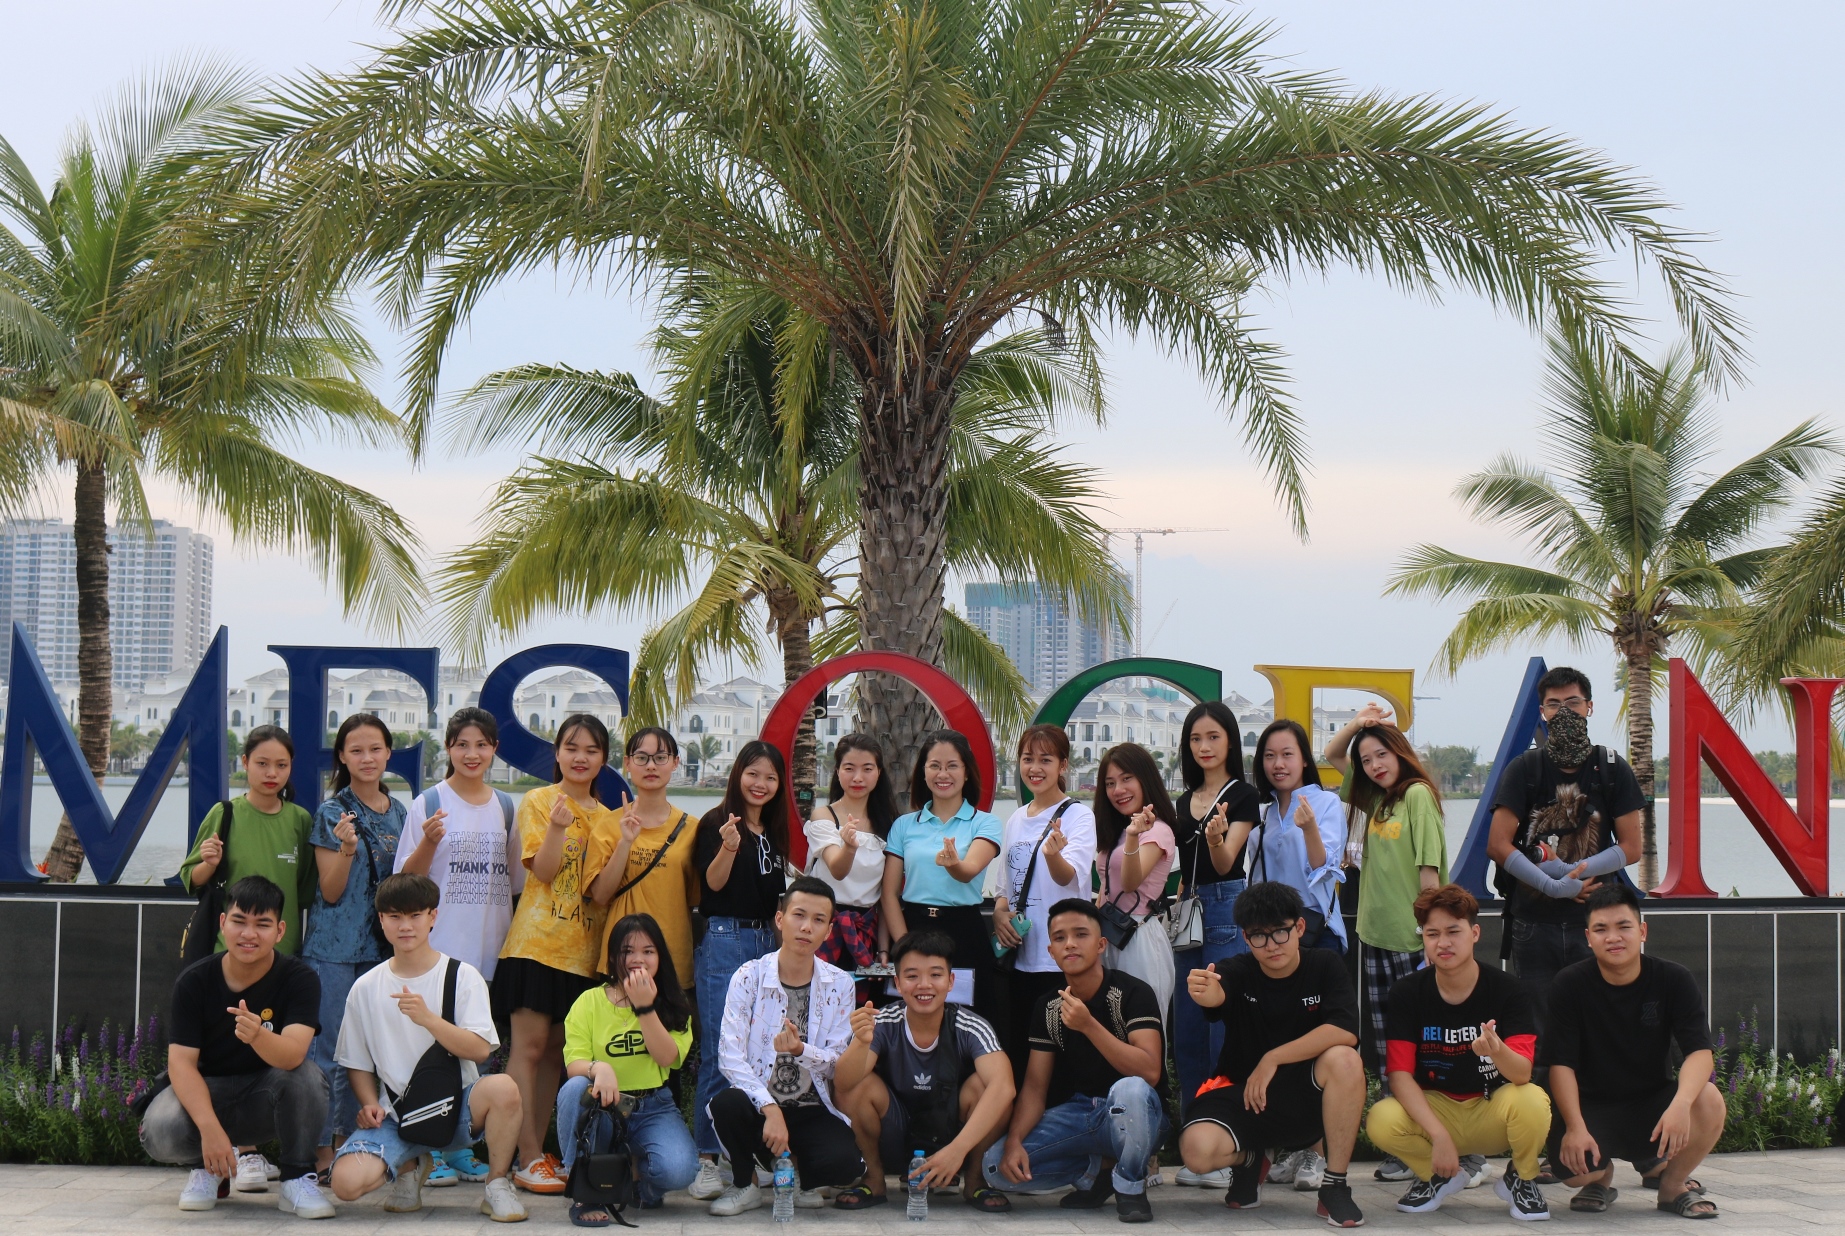 Đại học Tài Chính – Quản trị kinh doanh tổ chức cho tân sinh viên K8 đi tham quan thực tế